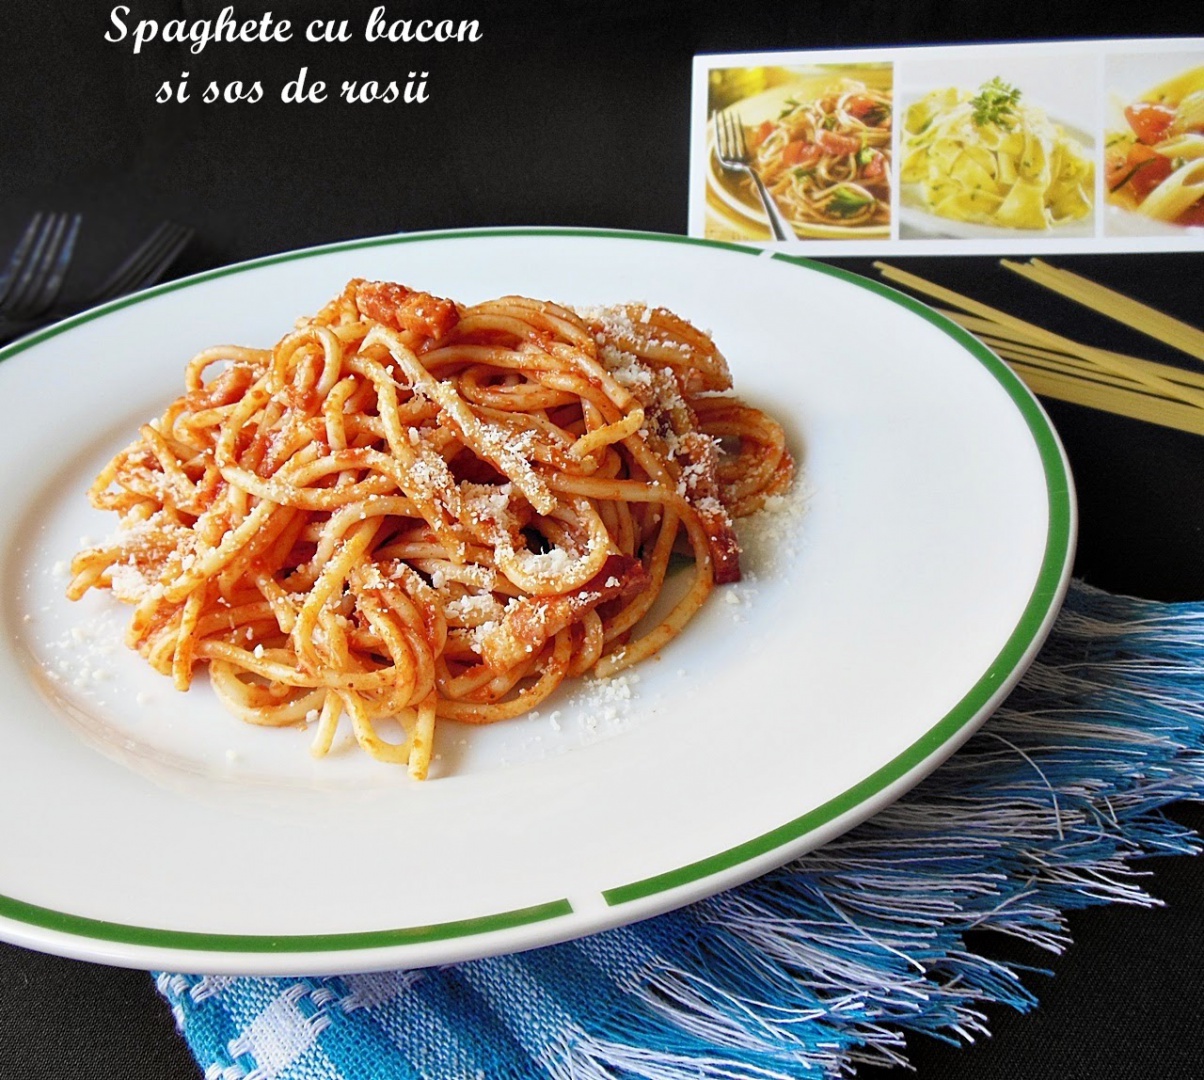 Spaghete cu bacon si sos de rosii | Retete culinare |